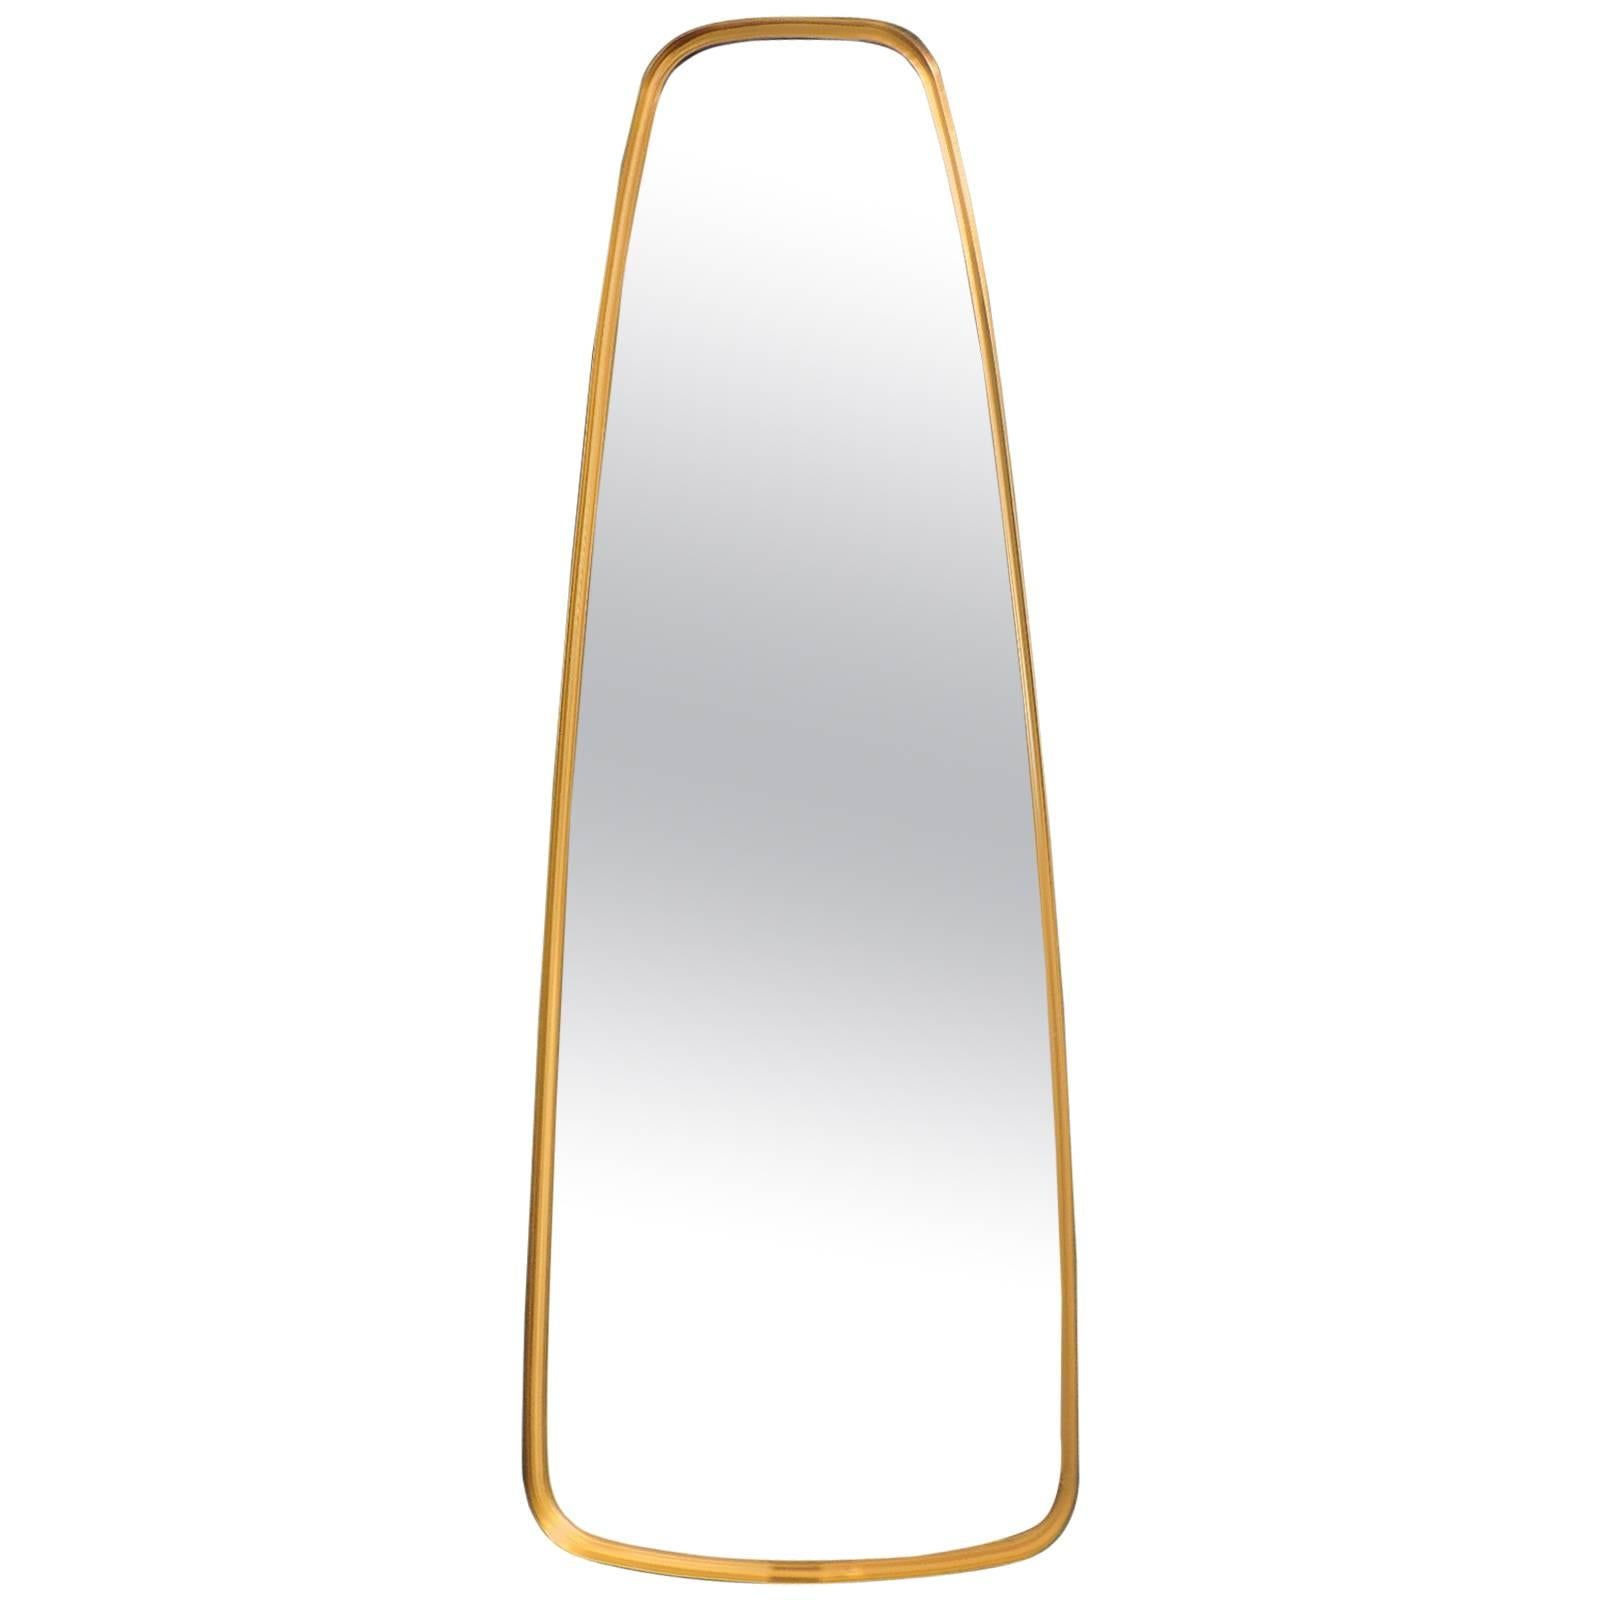  Oblong Brass Mirror